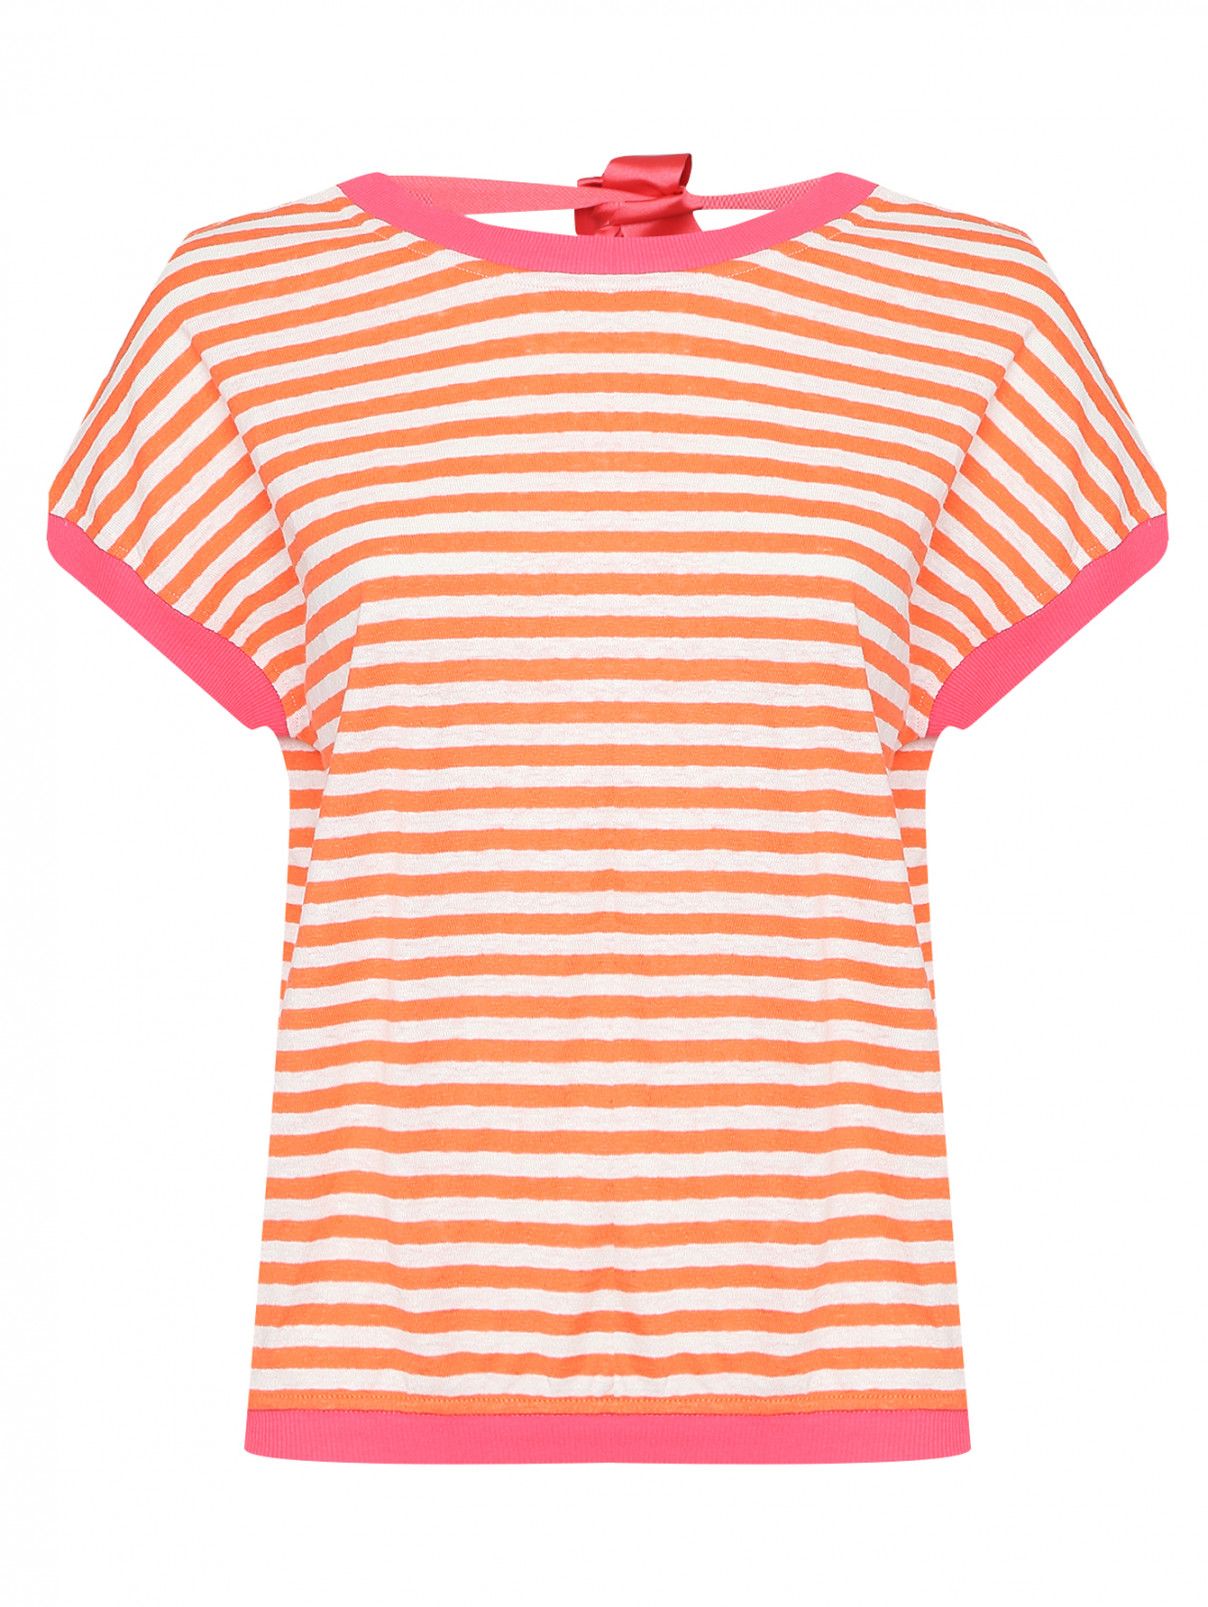 Топ из льна и хлопка с узором полоска Max&Co  –  Общий вид  – Цвет:  Оранжевый